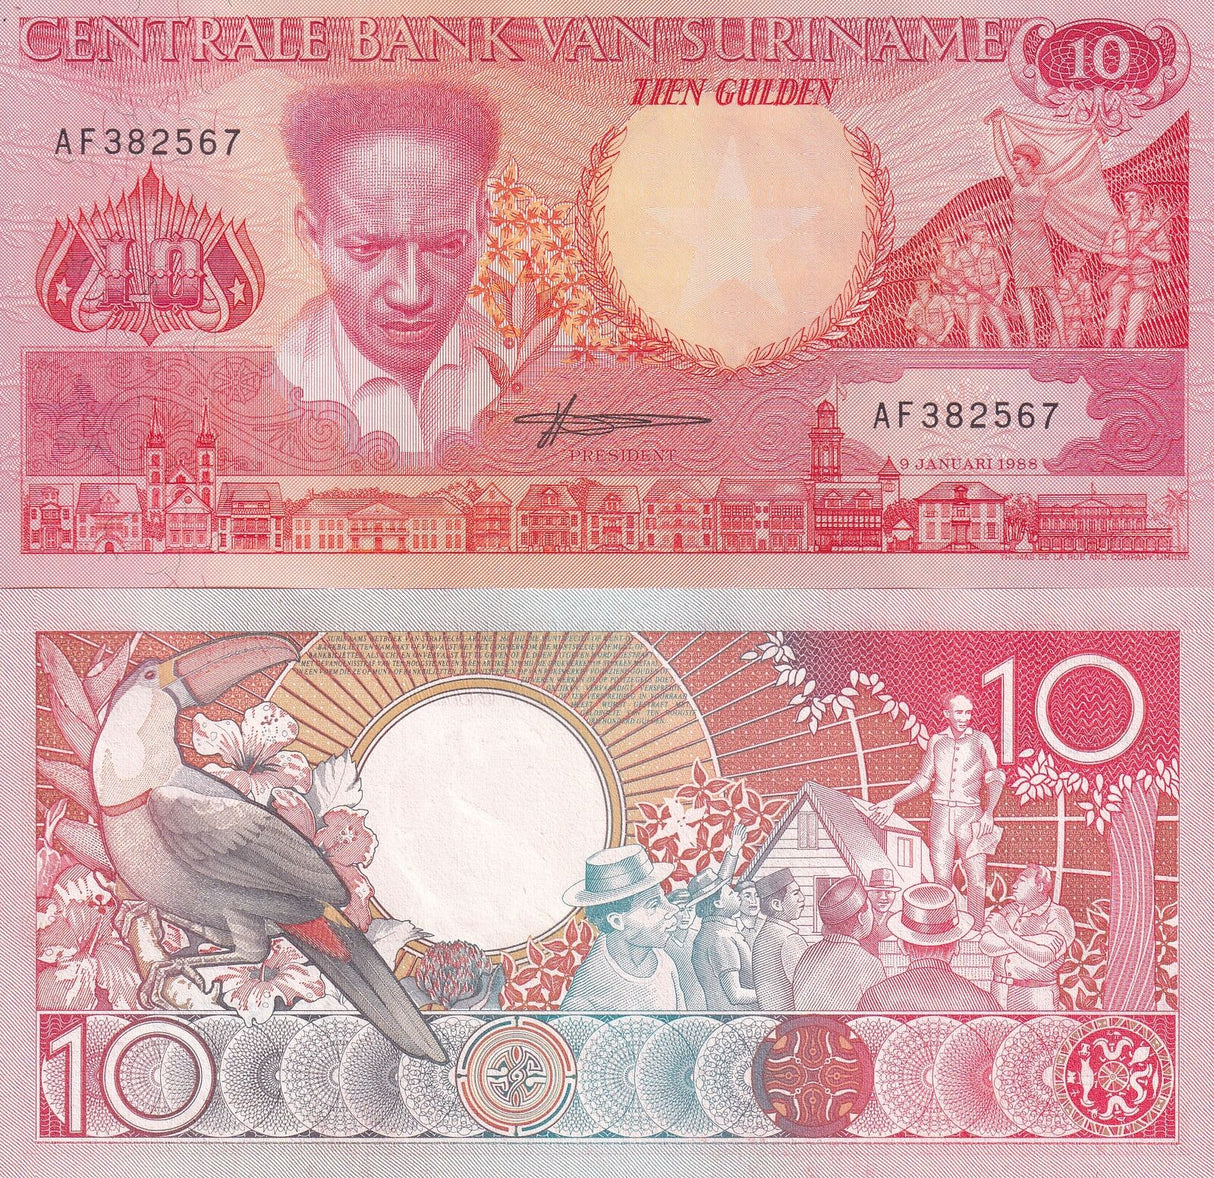 Suriname 10 Gulden 1988 P 131 b UNC